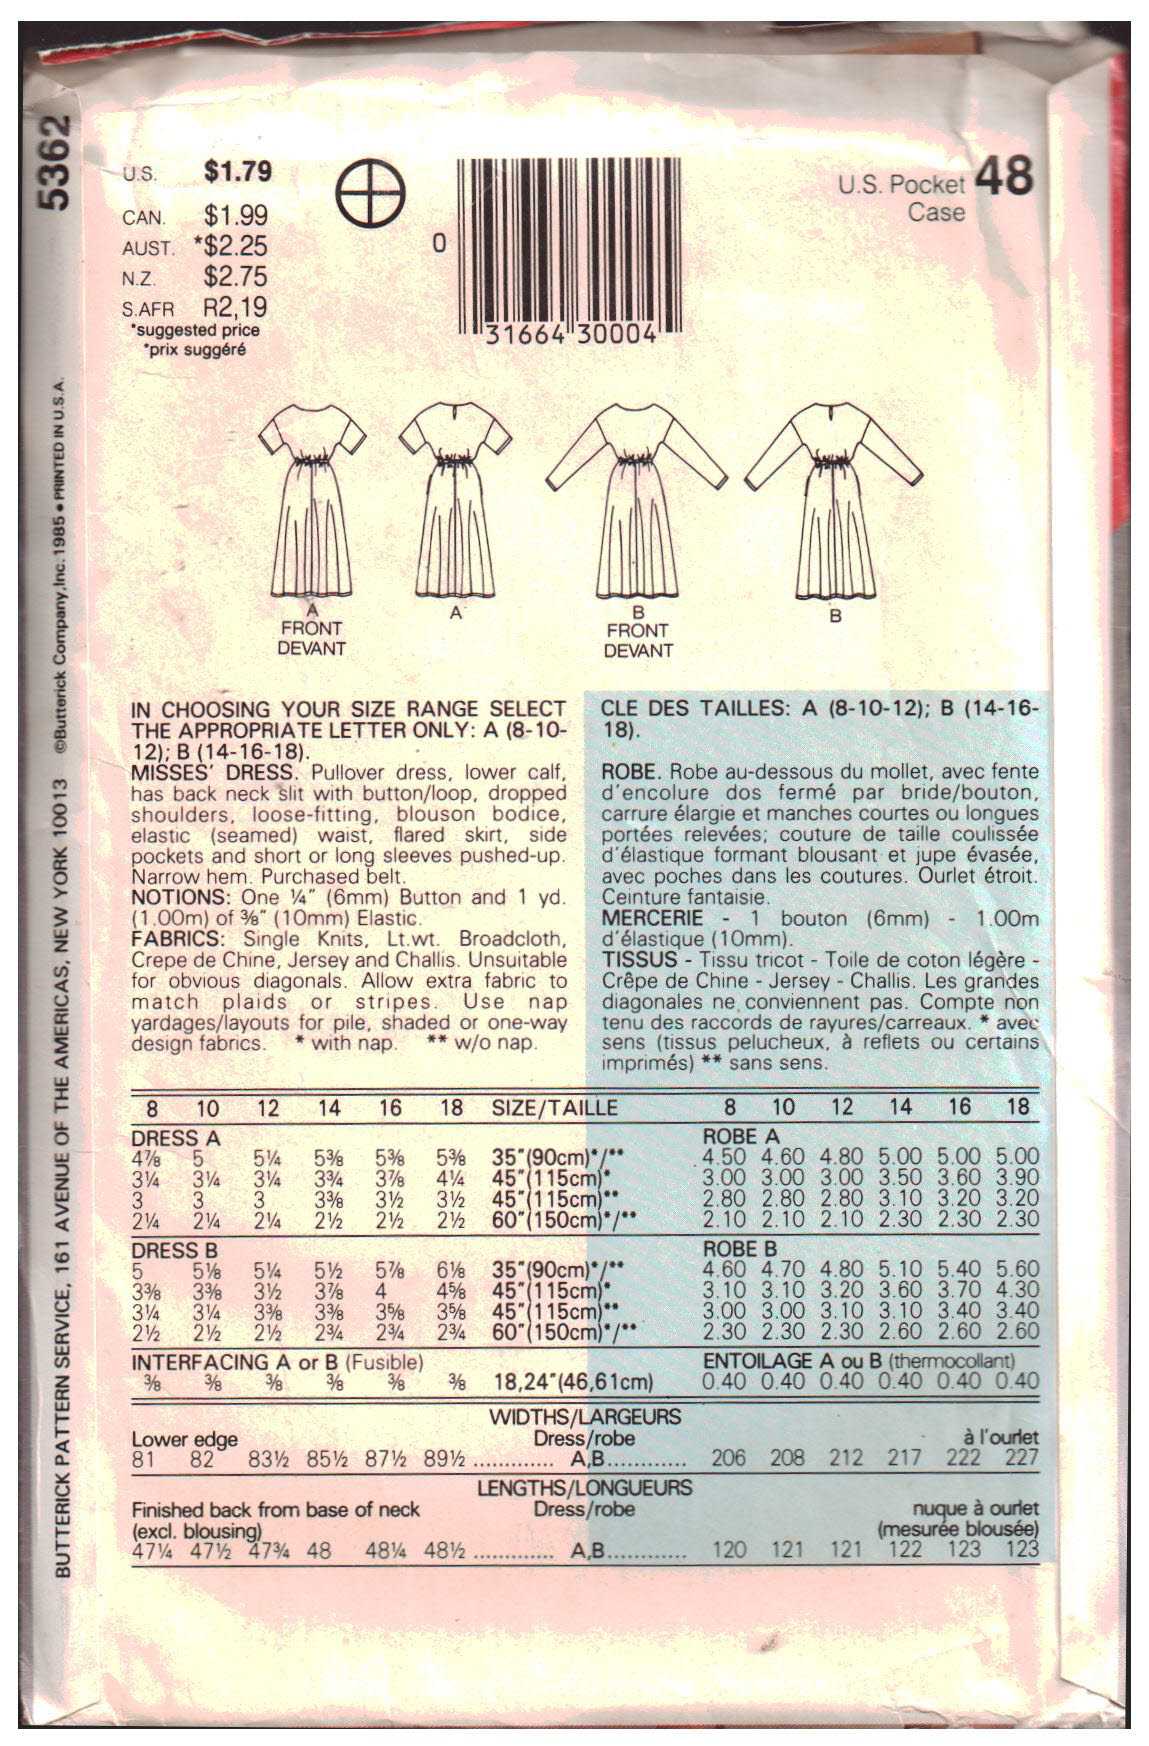 Butterick 5362 Dress Size: B 14-16-18 Used Sewing Pattern